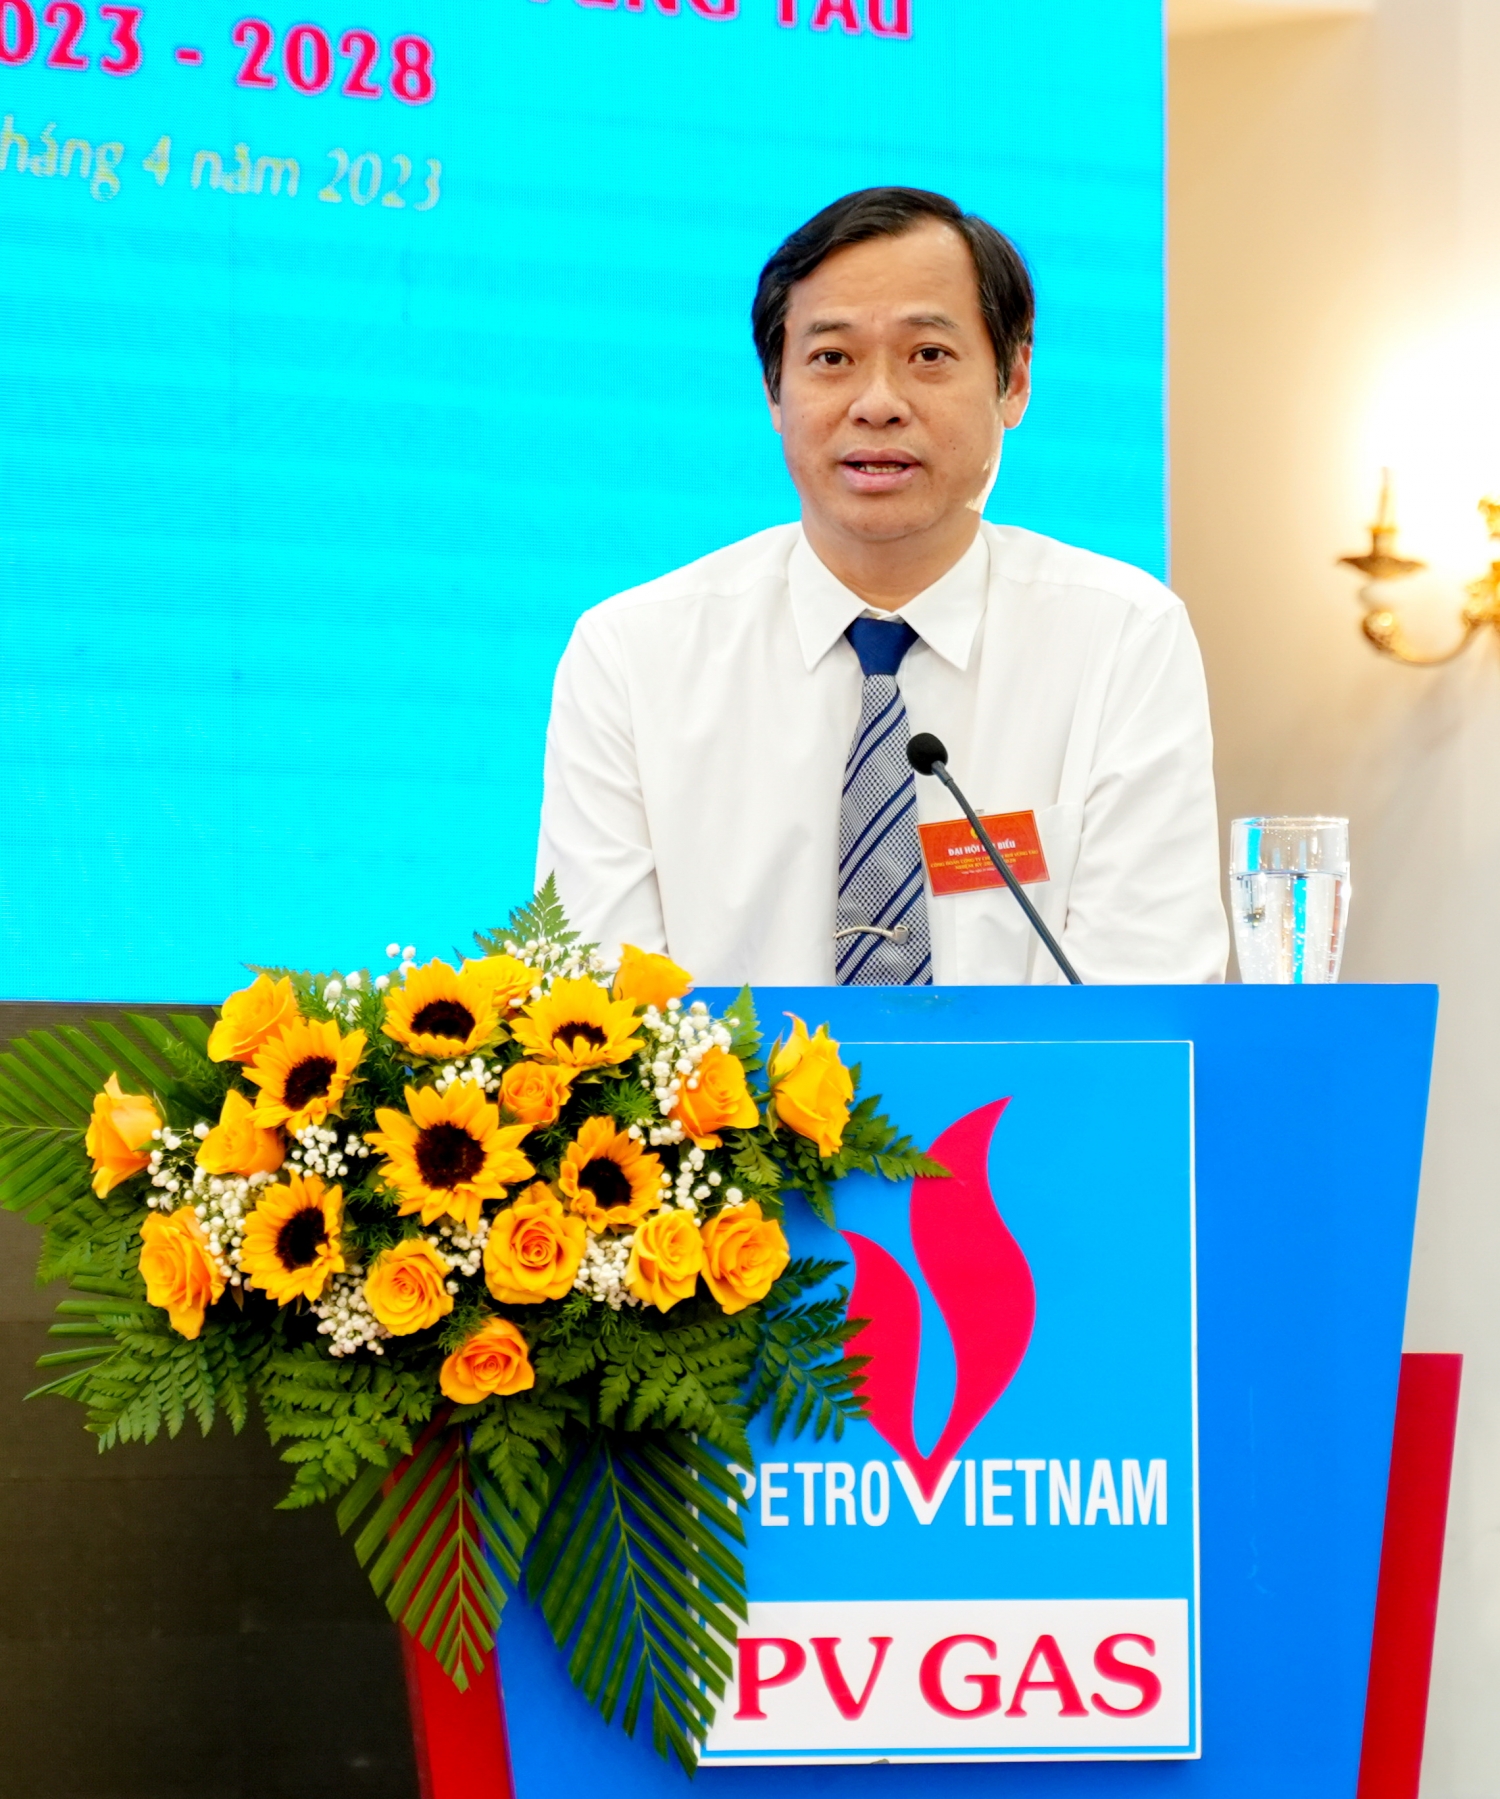 Đồng chí Trần Xuân Thành - Chủ tịch Công đoàn PV GAS đánh giá cao công tác chuẩn bị Đại hội, ghi nhận những thành tựu của Công đoàn KVT nhiệm kỳ 2018-2023